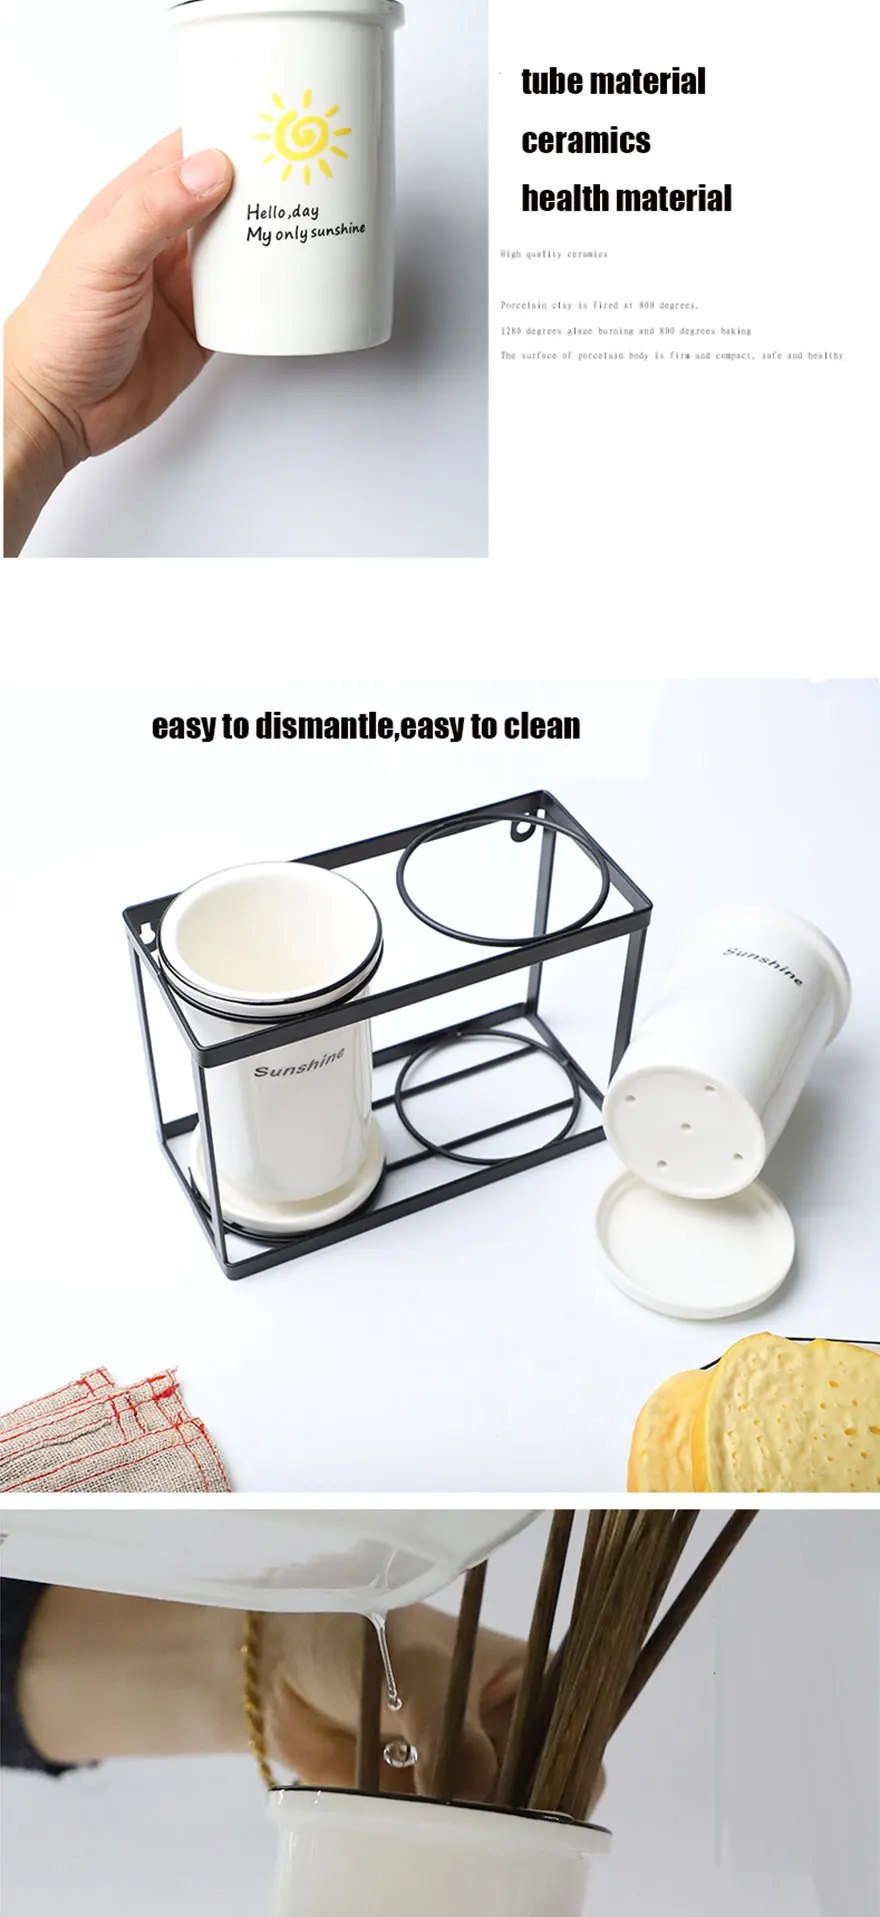 Керамическая подставка для посуды Mutfak палочки для еды баррель настенная подвесная клетка сливная стойка креативная Бытовая кухонная посуда ложка шкатулка